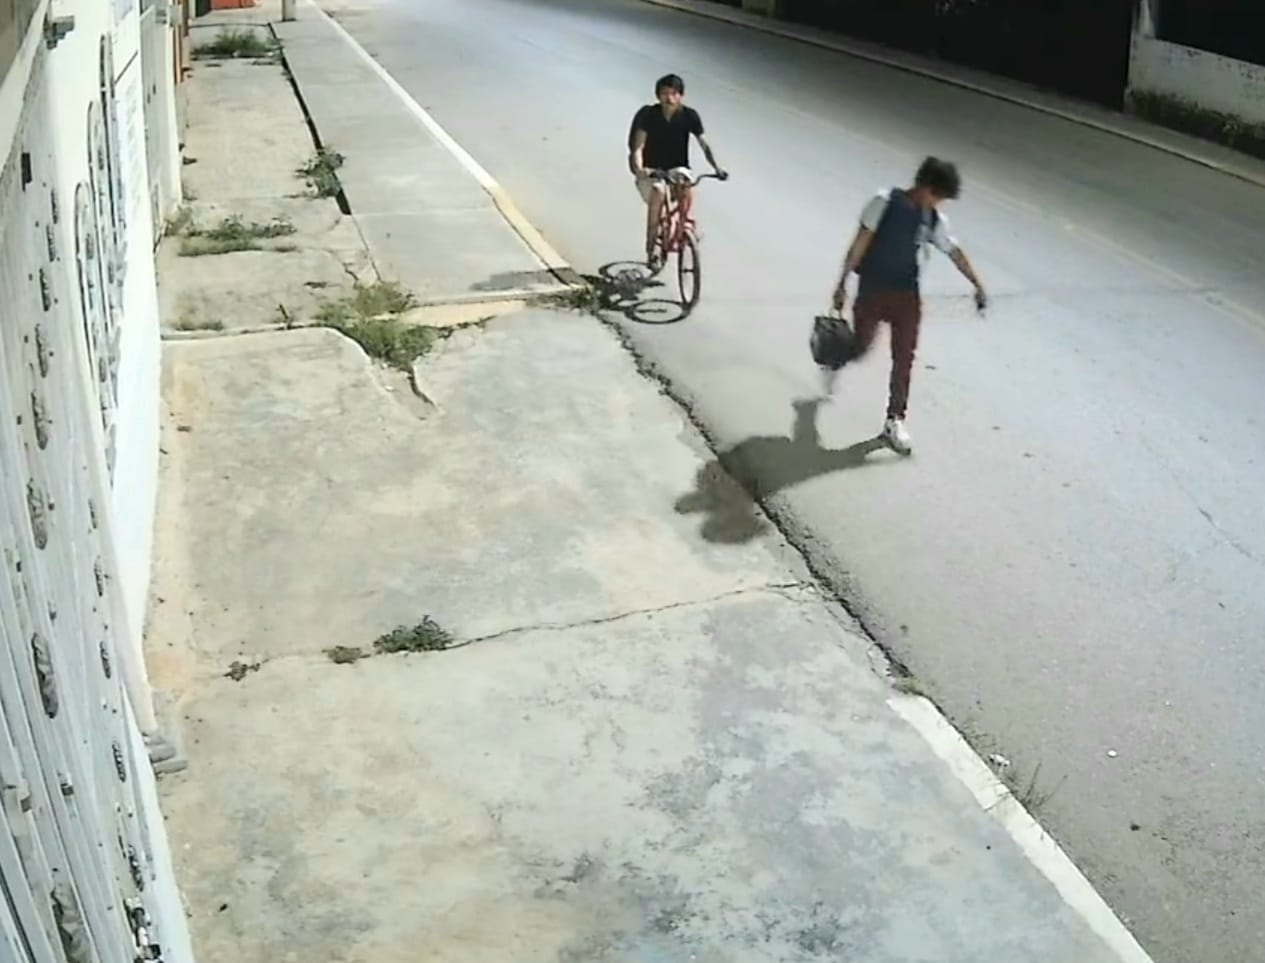 Hecelchakán: Ladrones roban batería de auto y quedan captados en video